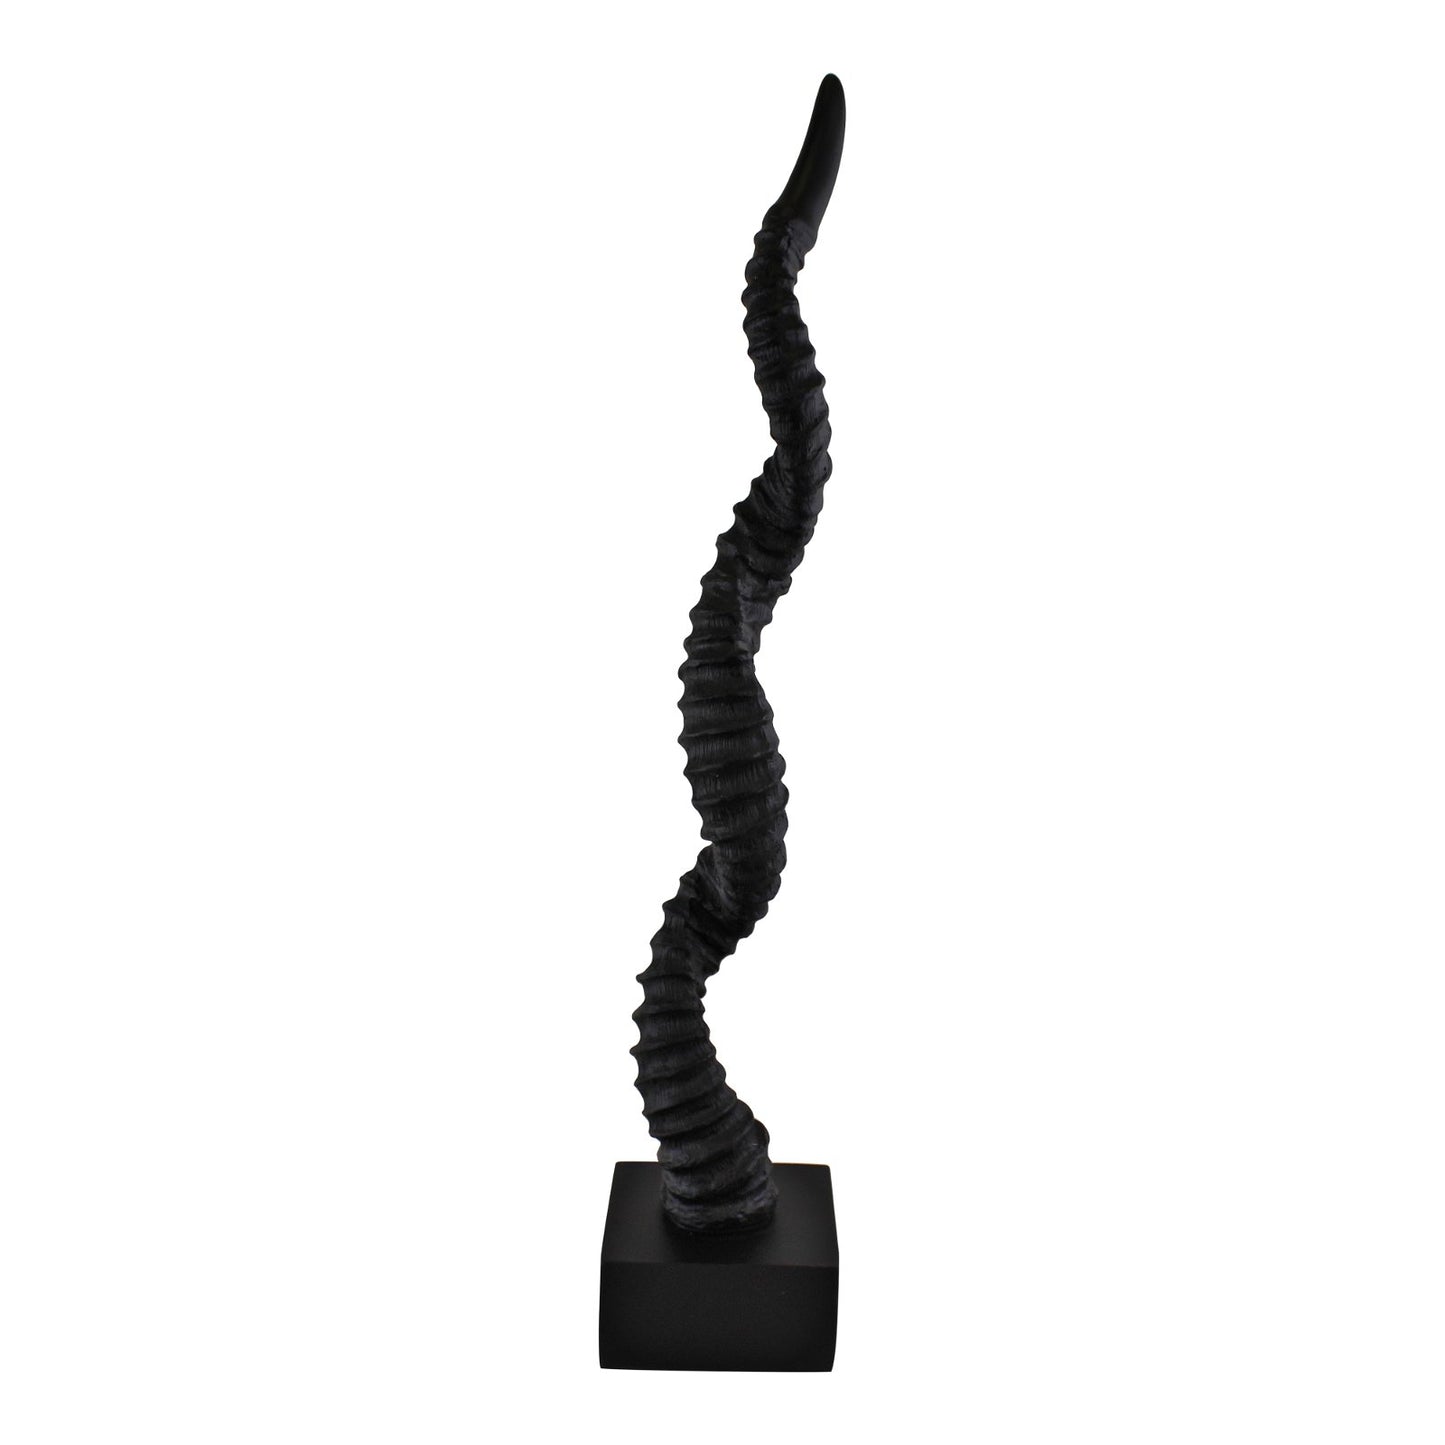 Antelope Horn Sculpture, 50cm